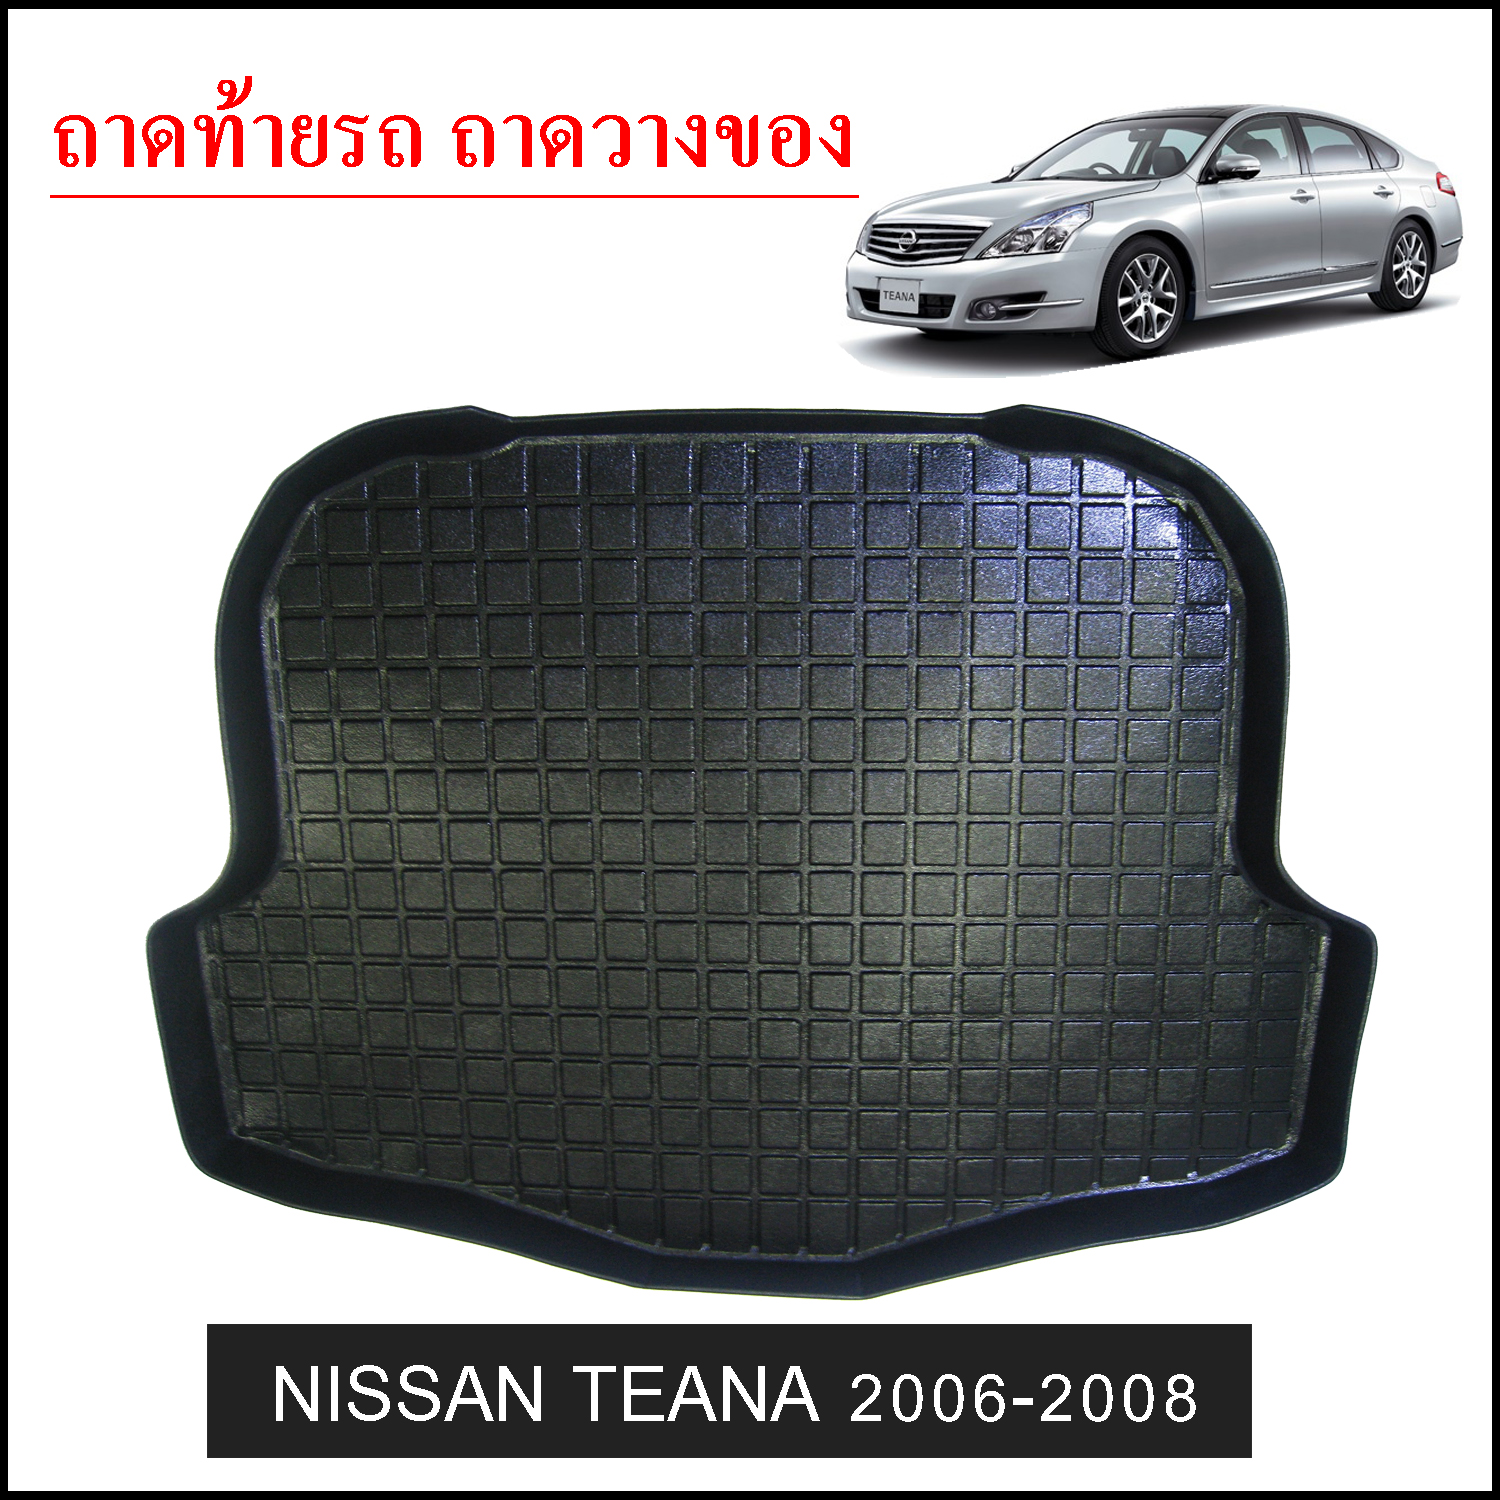 ถาดท้ายวางของ Nissan Teana 2006-2008